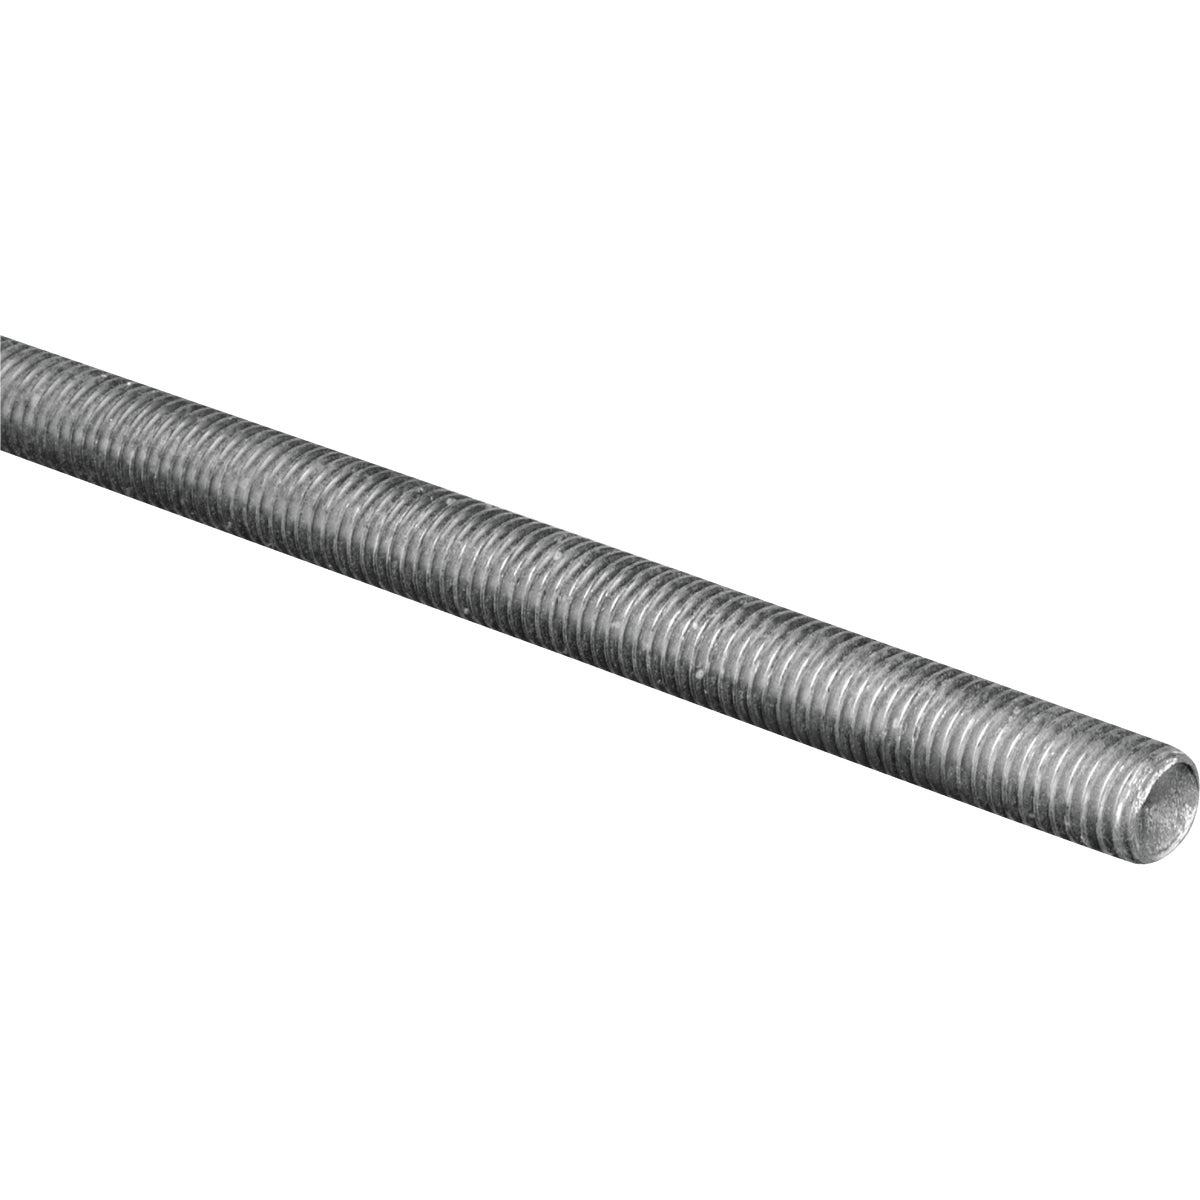 Hillman Steelworks 5/8 In. x 6 Ft. Steel Threaded Rod